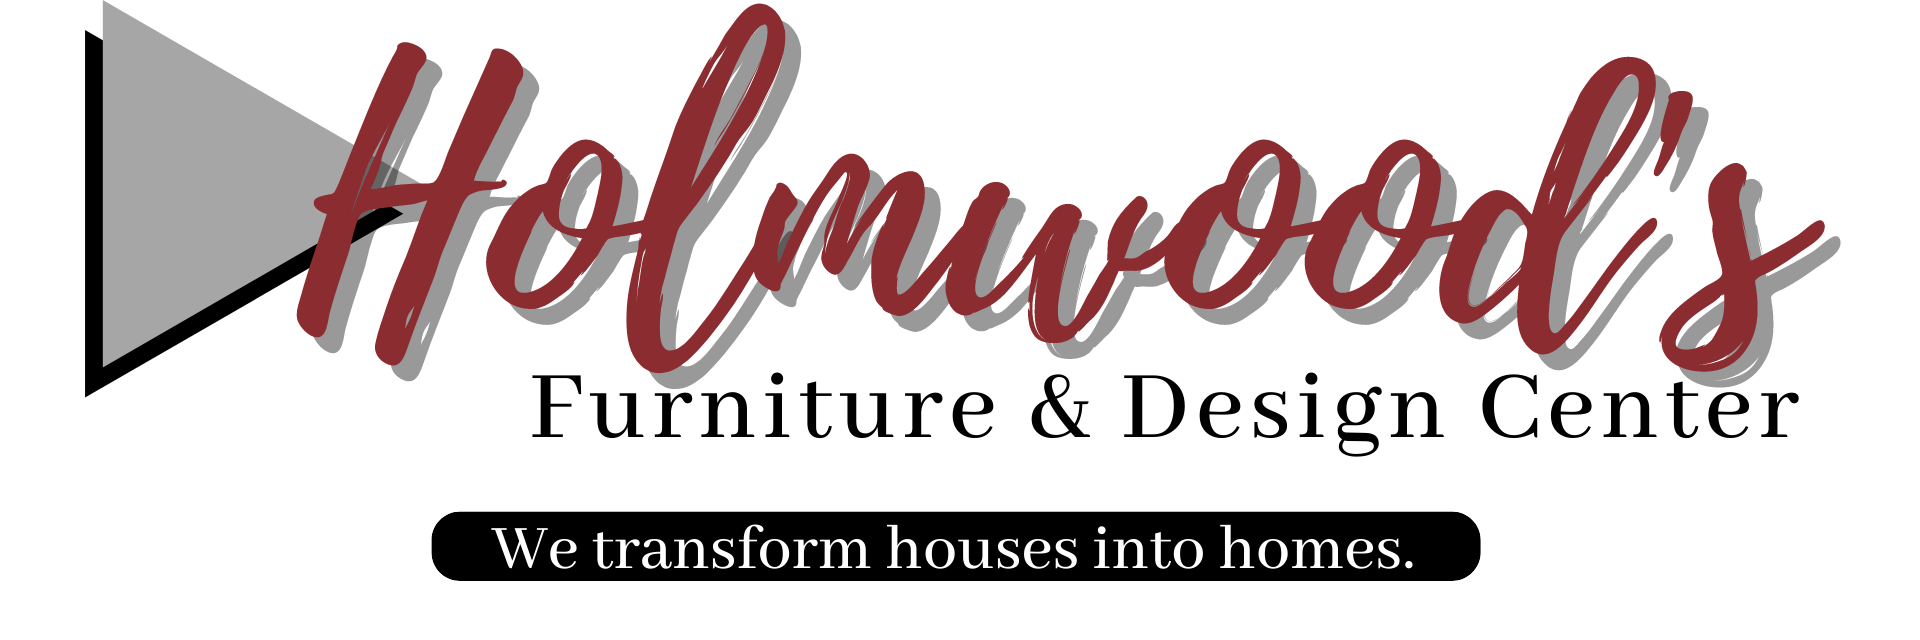 Holmwood's Furniture & Design Center logo